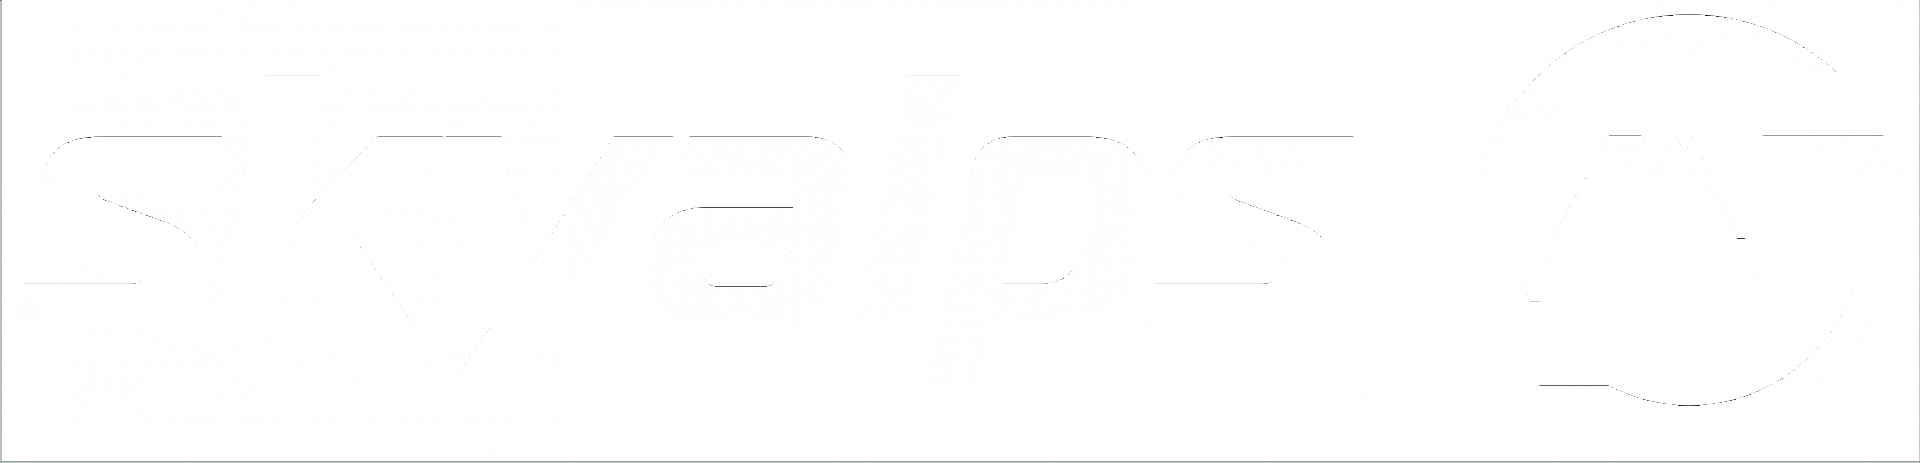 Skyalps-Logo-2.png